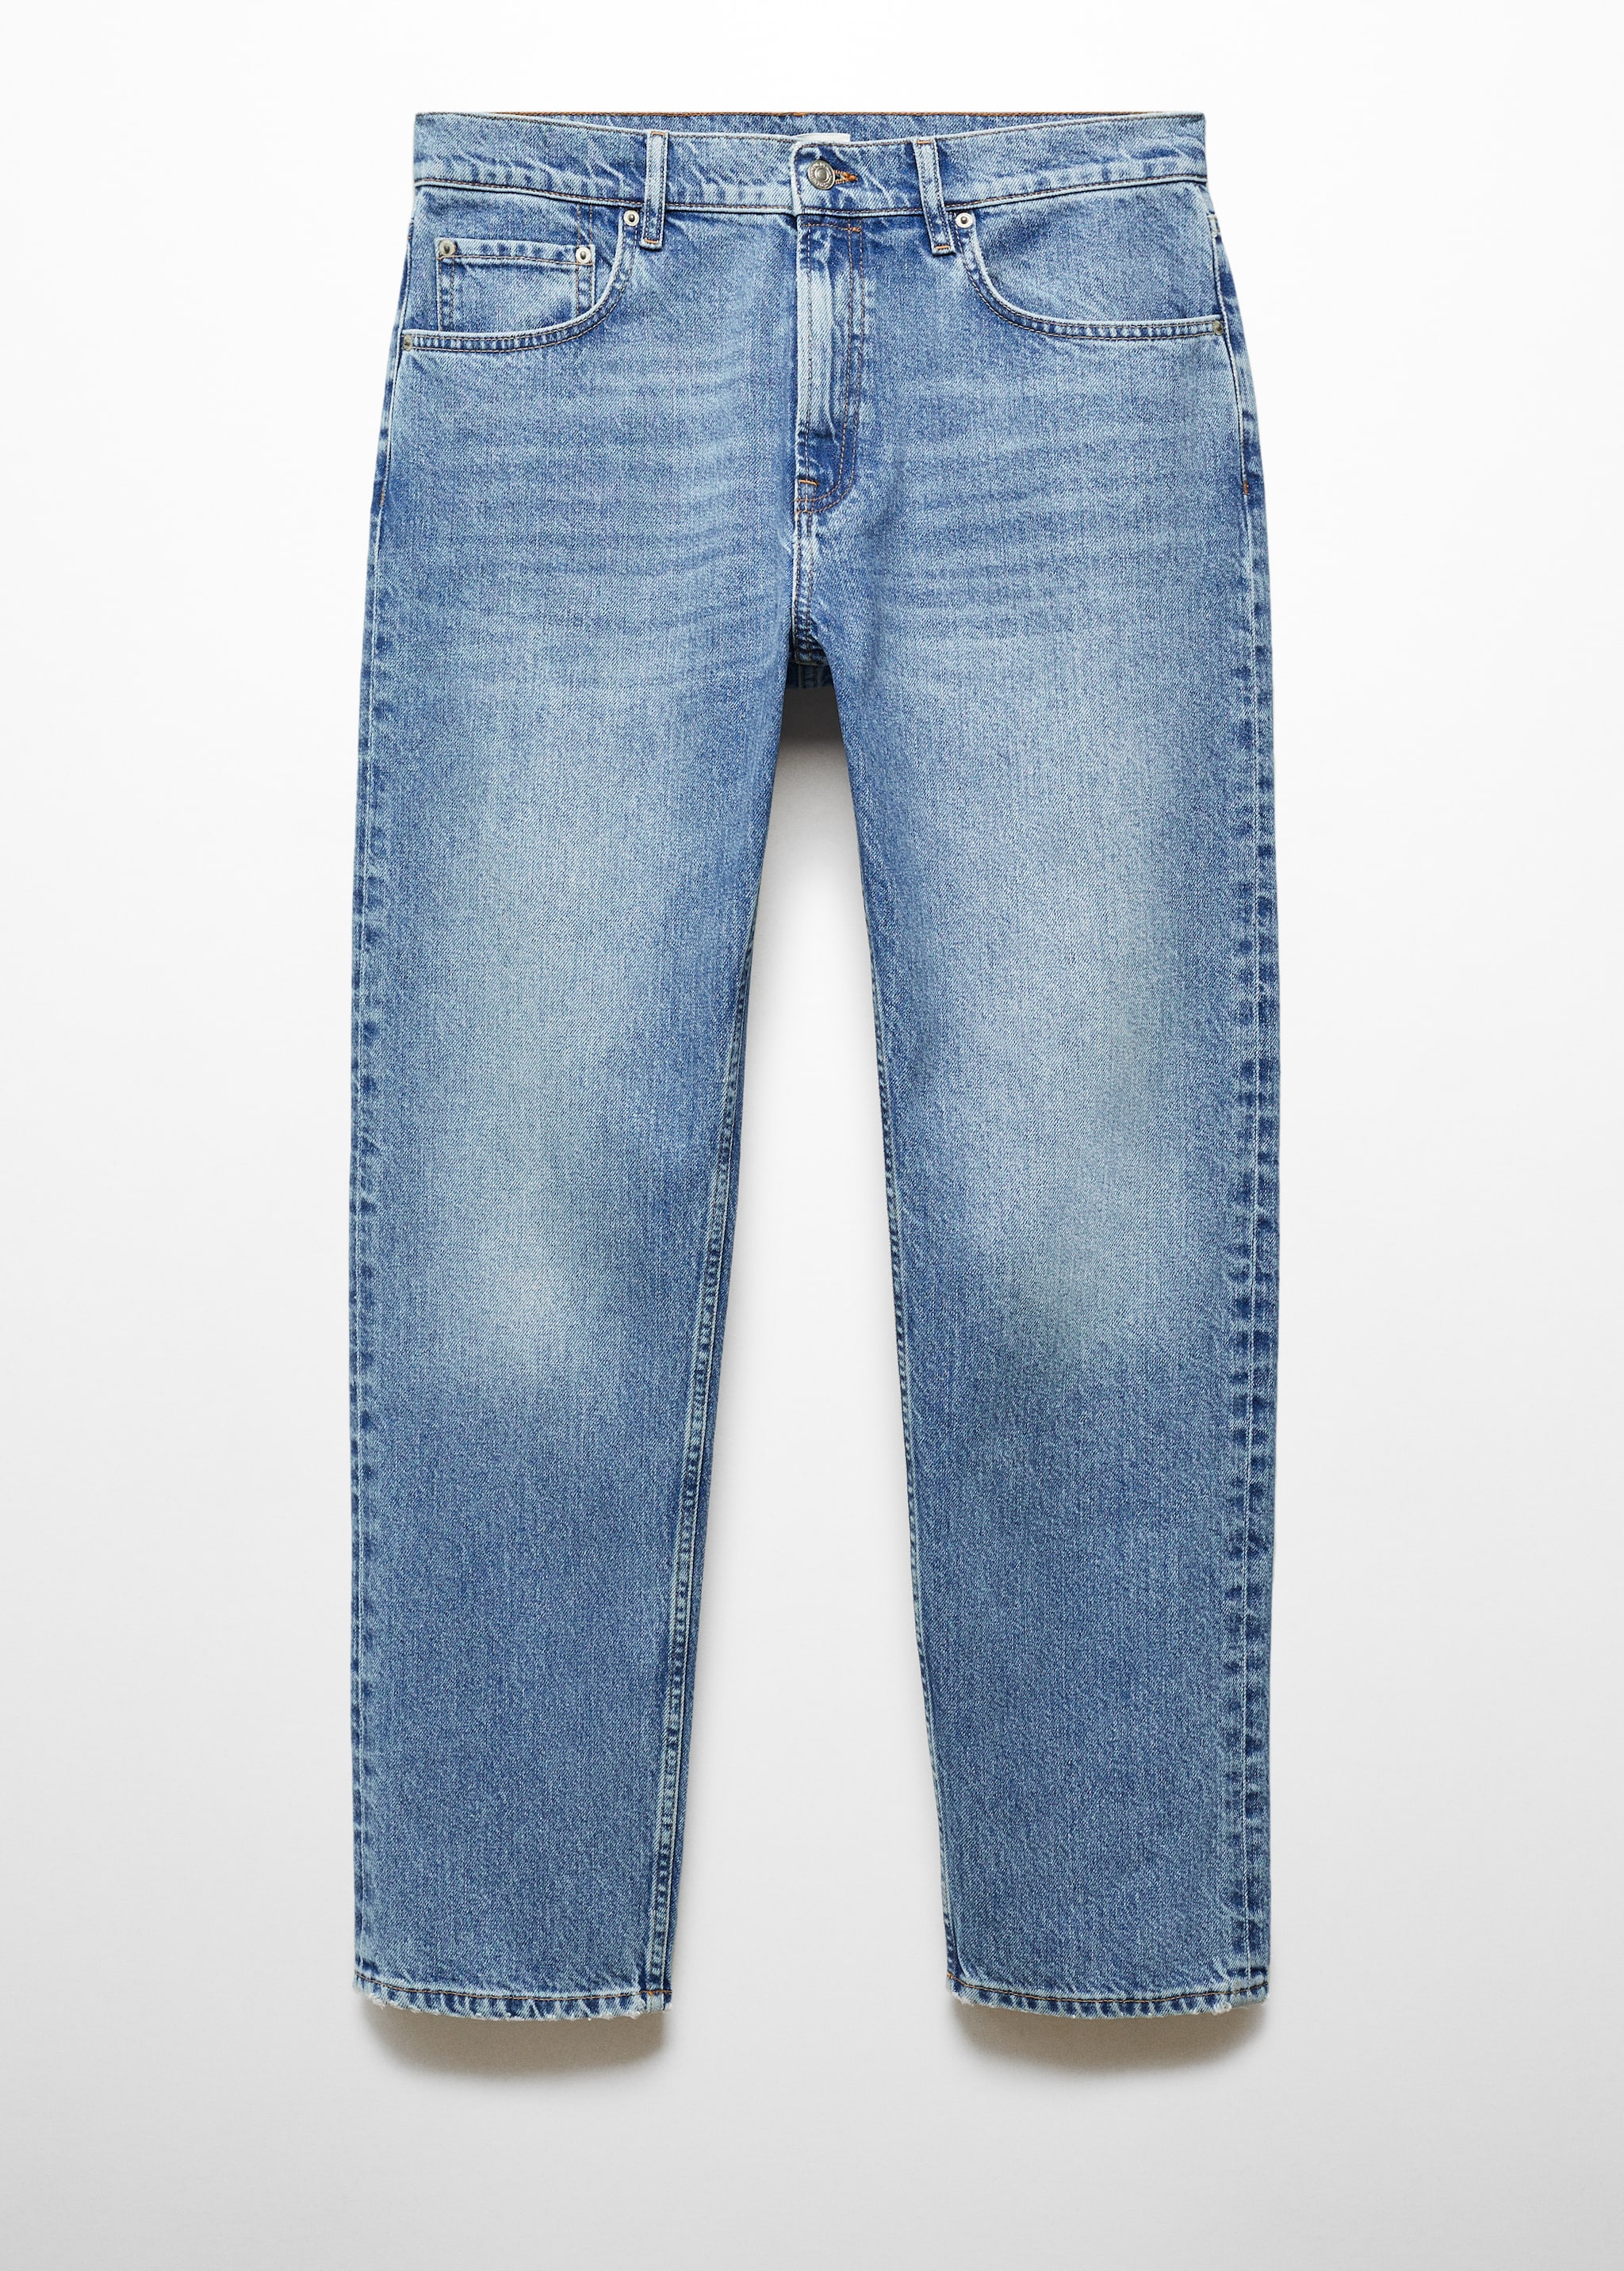 Jeans regular fit lavado medio - Artículo sin modelo